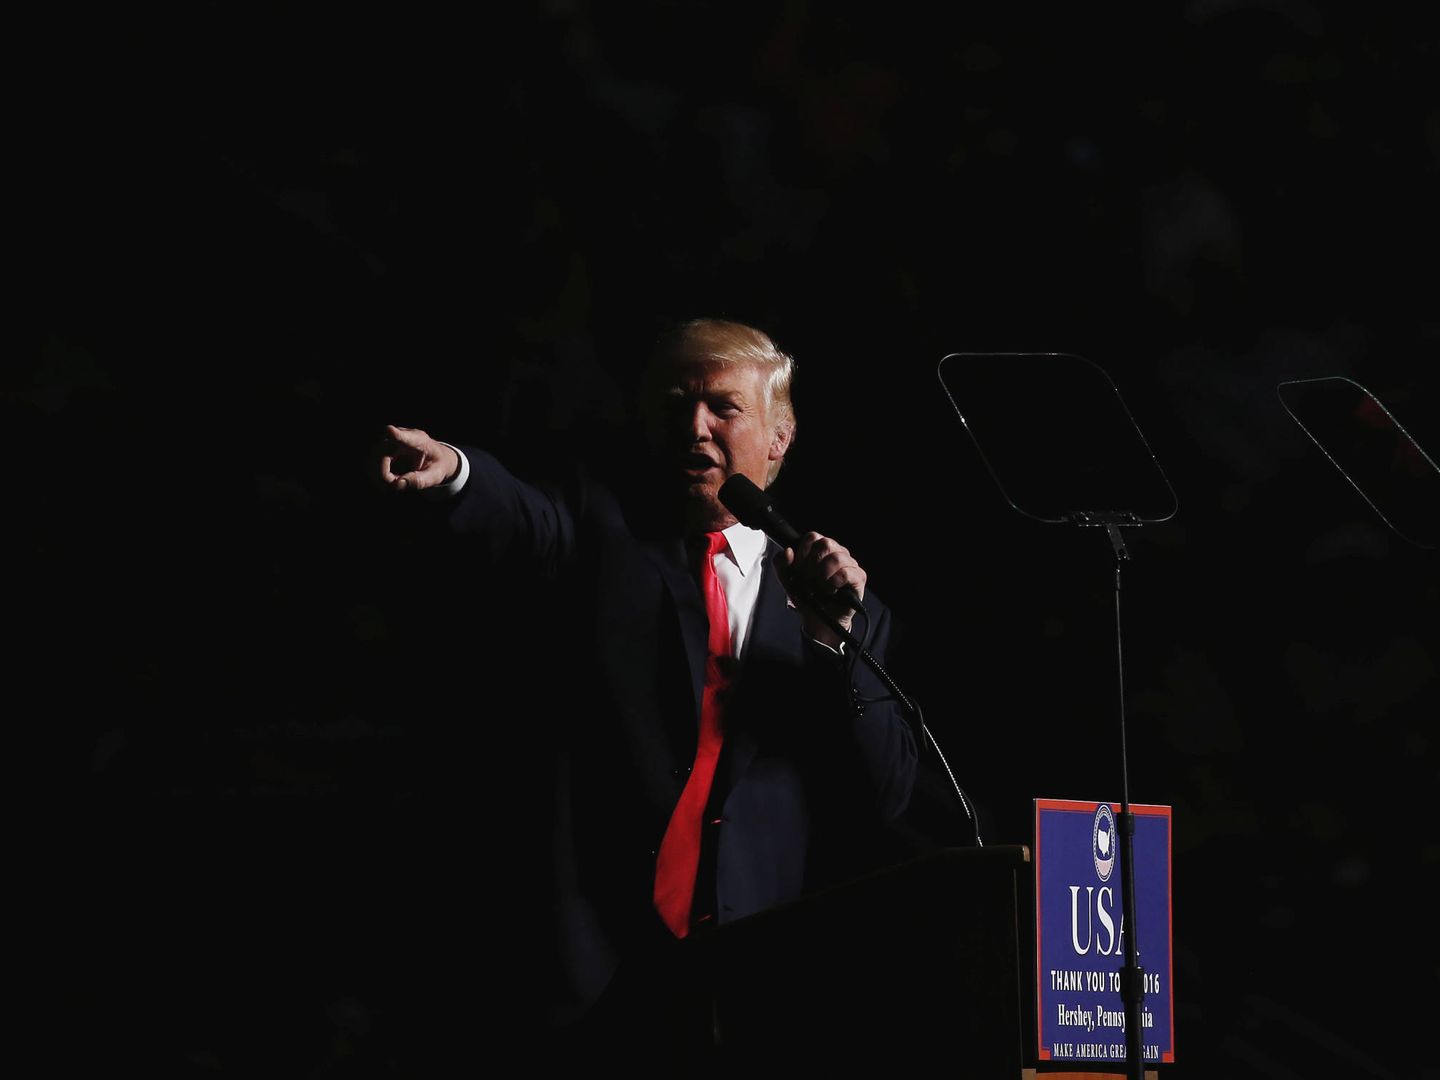 Donald Trump durante su intervención en el evento USA Thank You en Hershey, Pennsylvania. (Reuters)